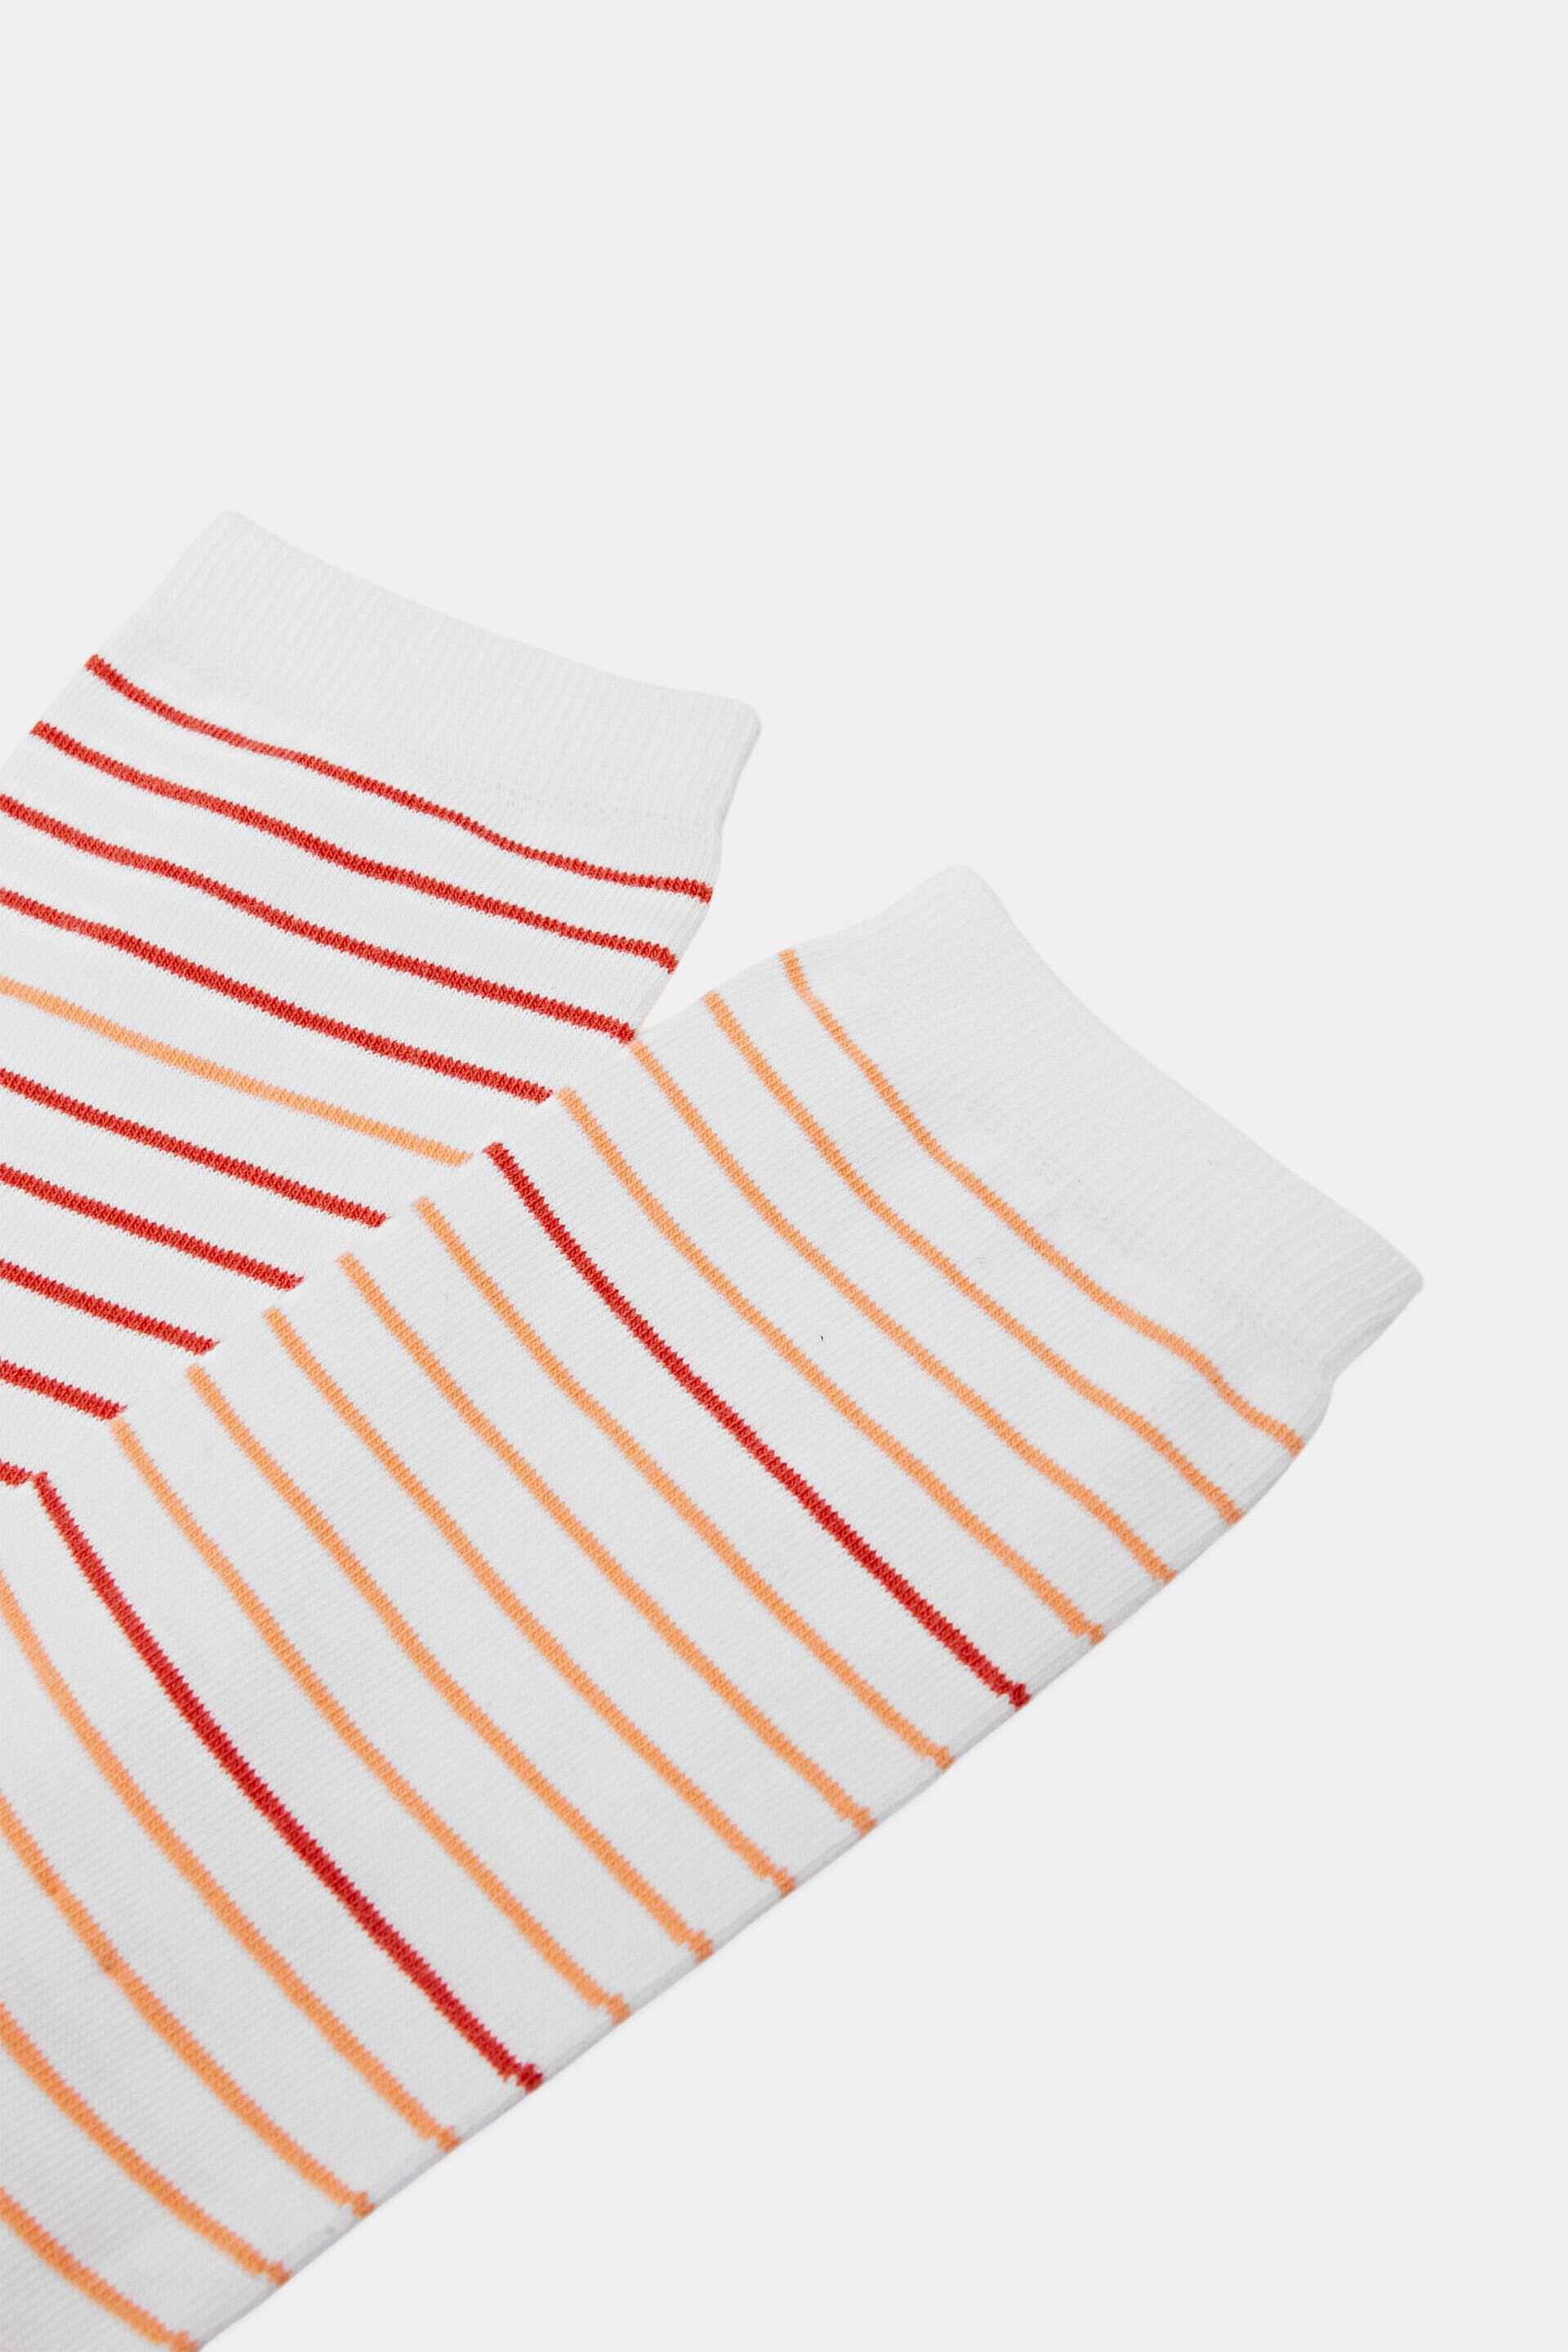 Esprit Socken Bio-Baumwolle aus 2er-Pack gestreifte